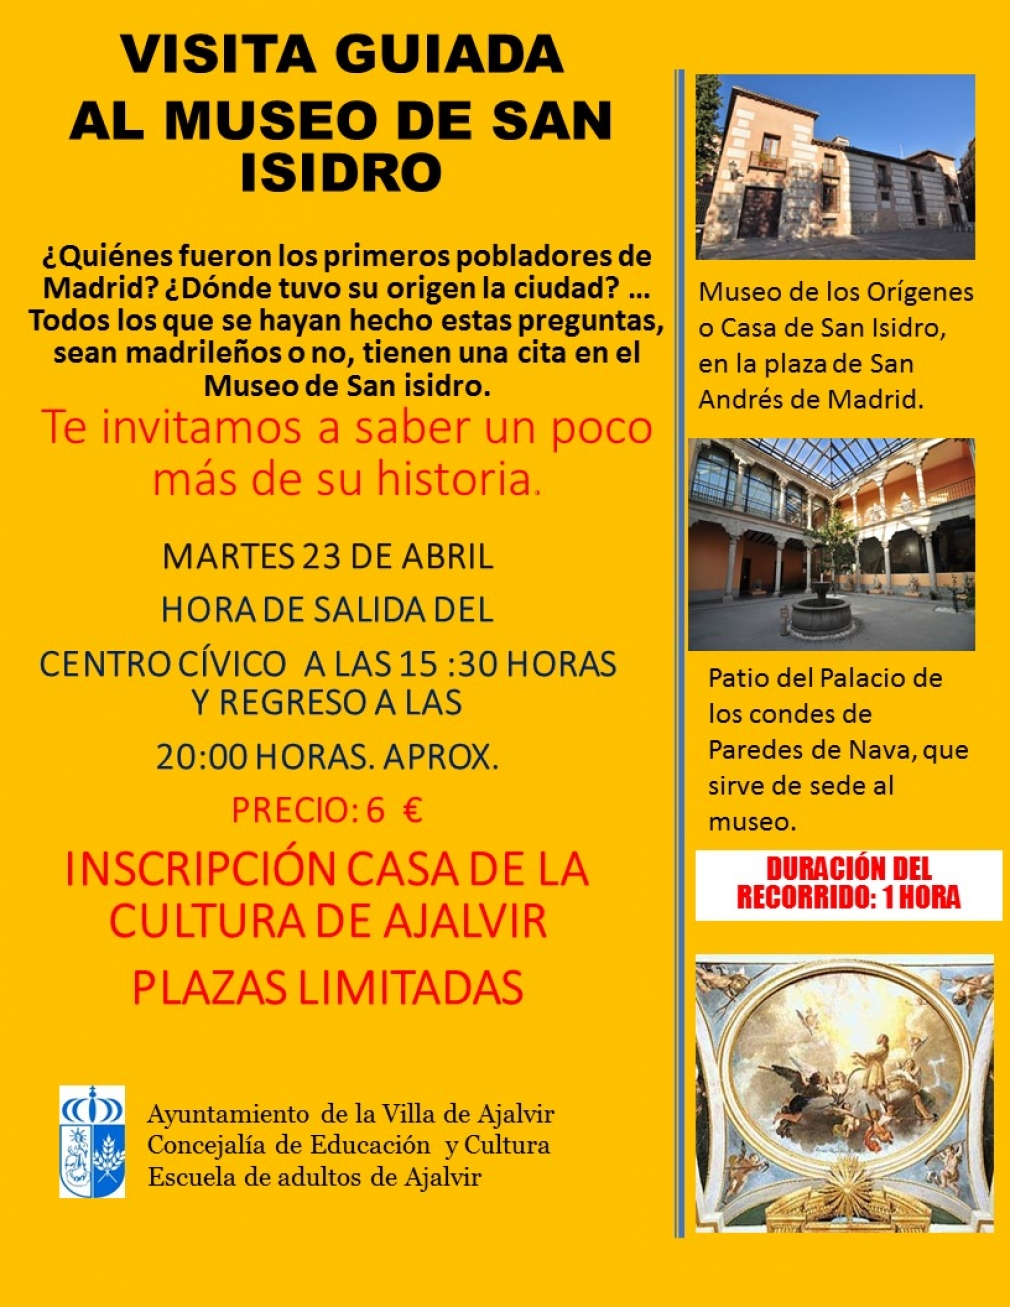 Visita cultural al Museo de San Isidro de Madrid. 23-4-19